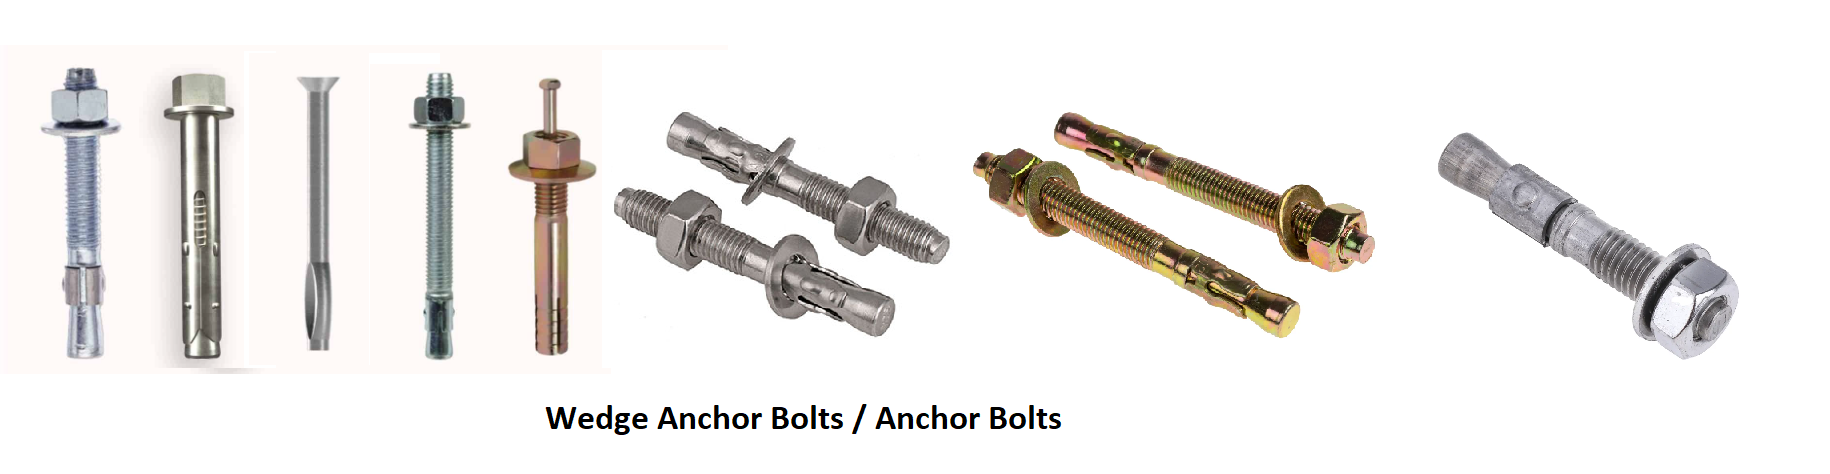 anchor-bolt-wedge-anchor bolt-ankar-bolt-manufacturer-supplier- in-chennai-india